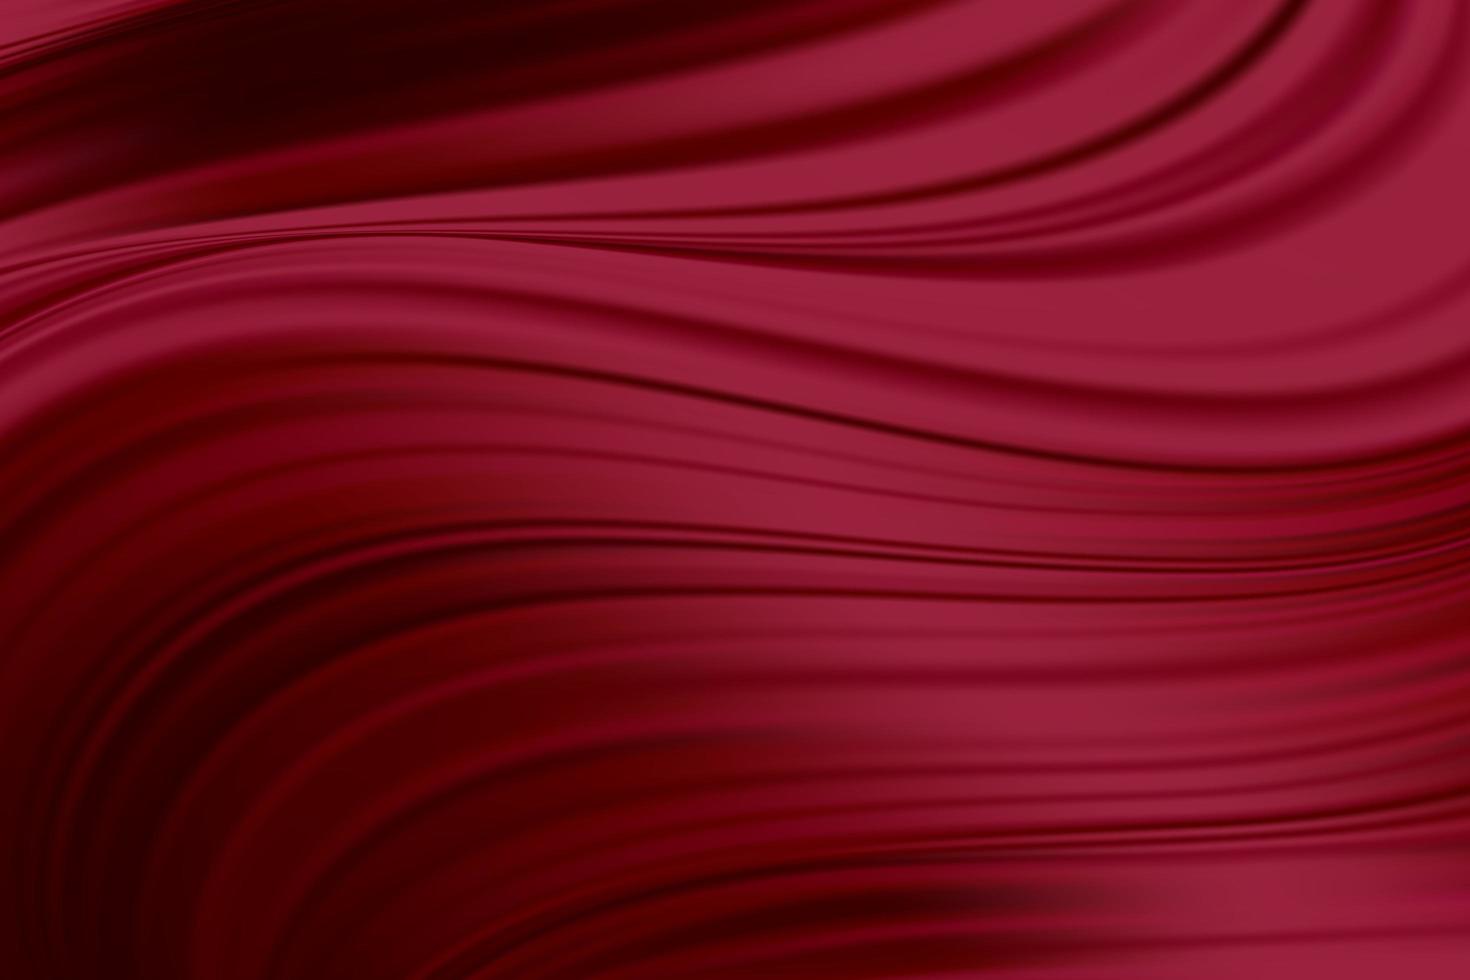 röd siden tyg abstrakt bakgrund, vektorillustration vektor